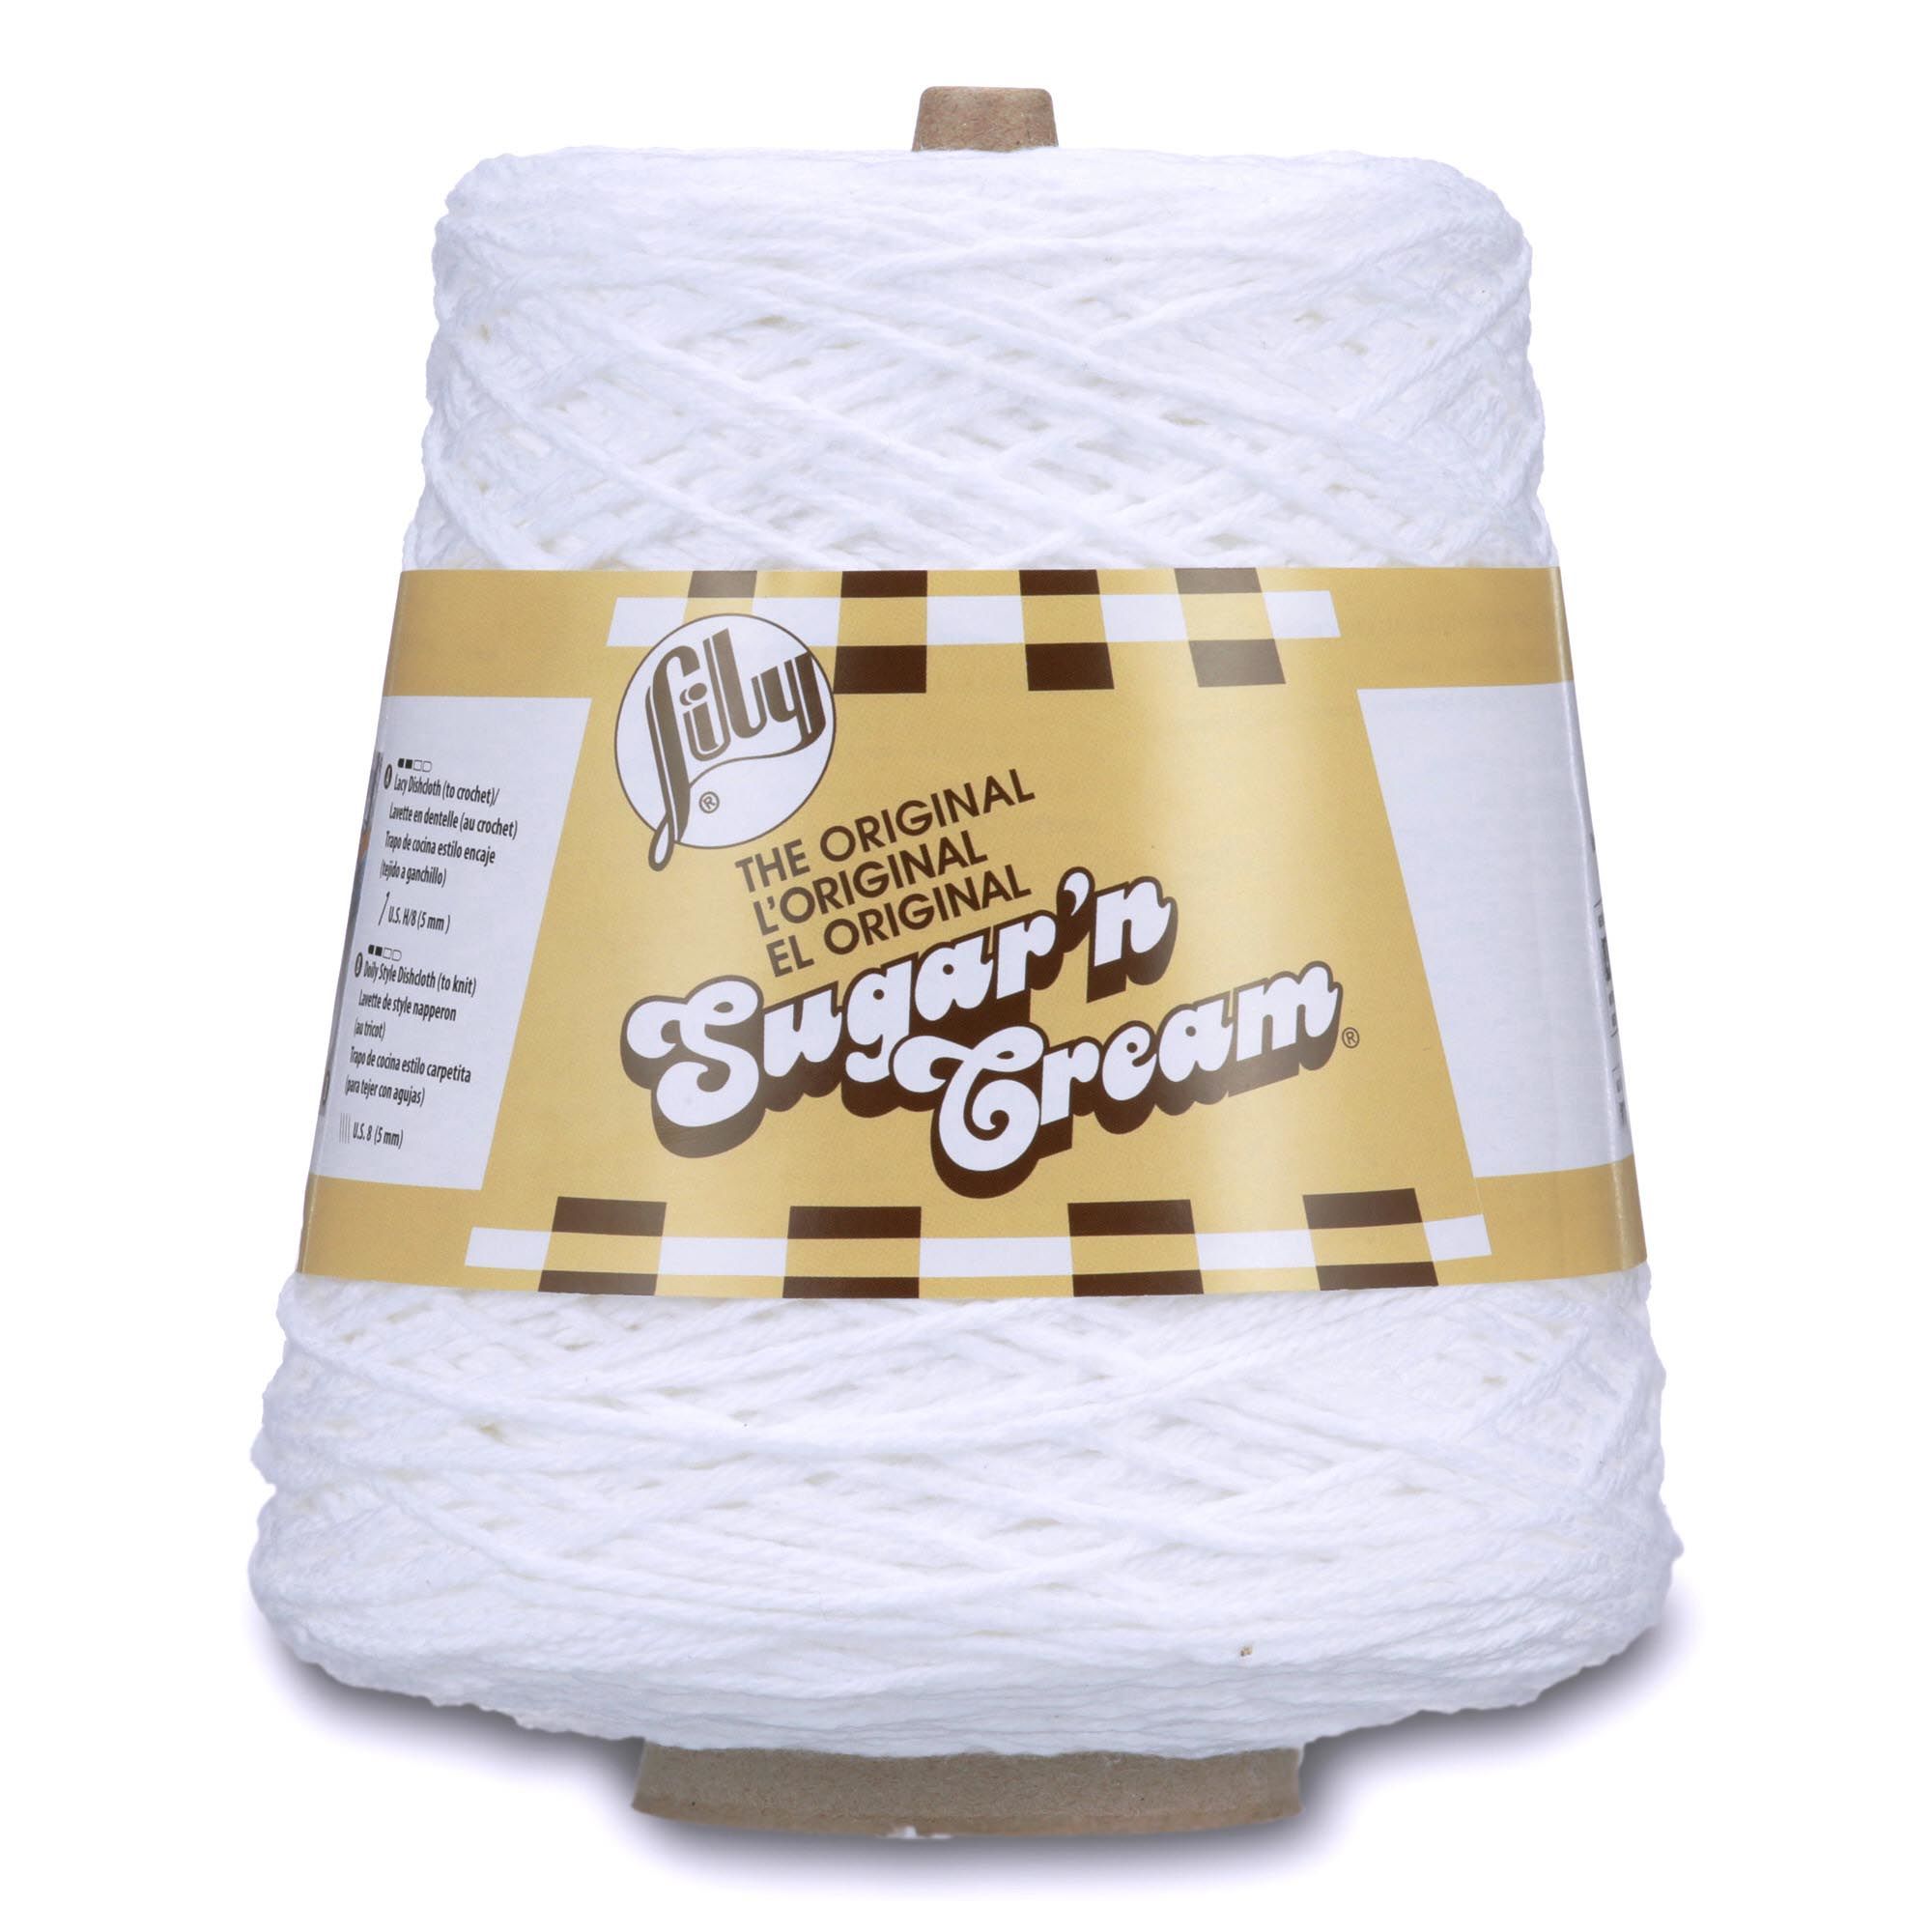 Lily Sugar'n Cream Cone 4 Medium Cotton Yarn, White 14oz/400g, 706 Yards - image 1 of 3